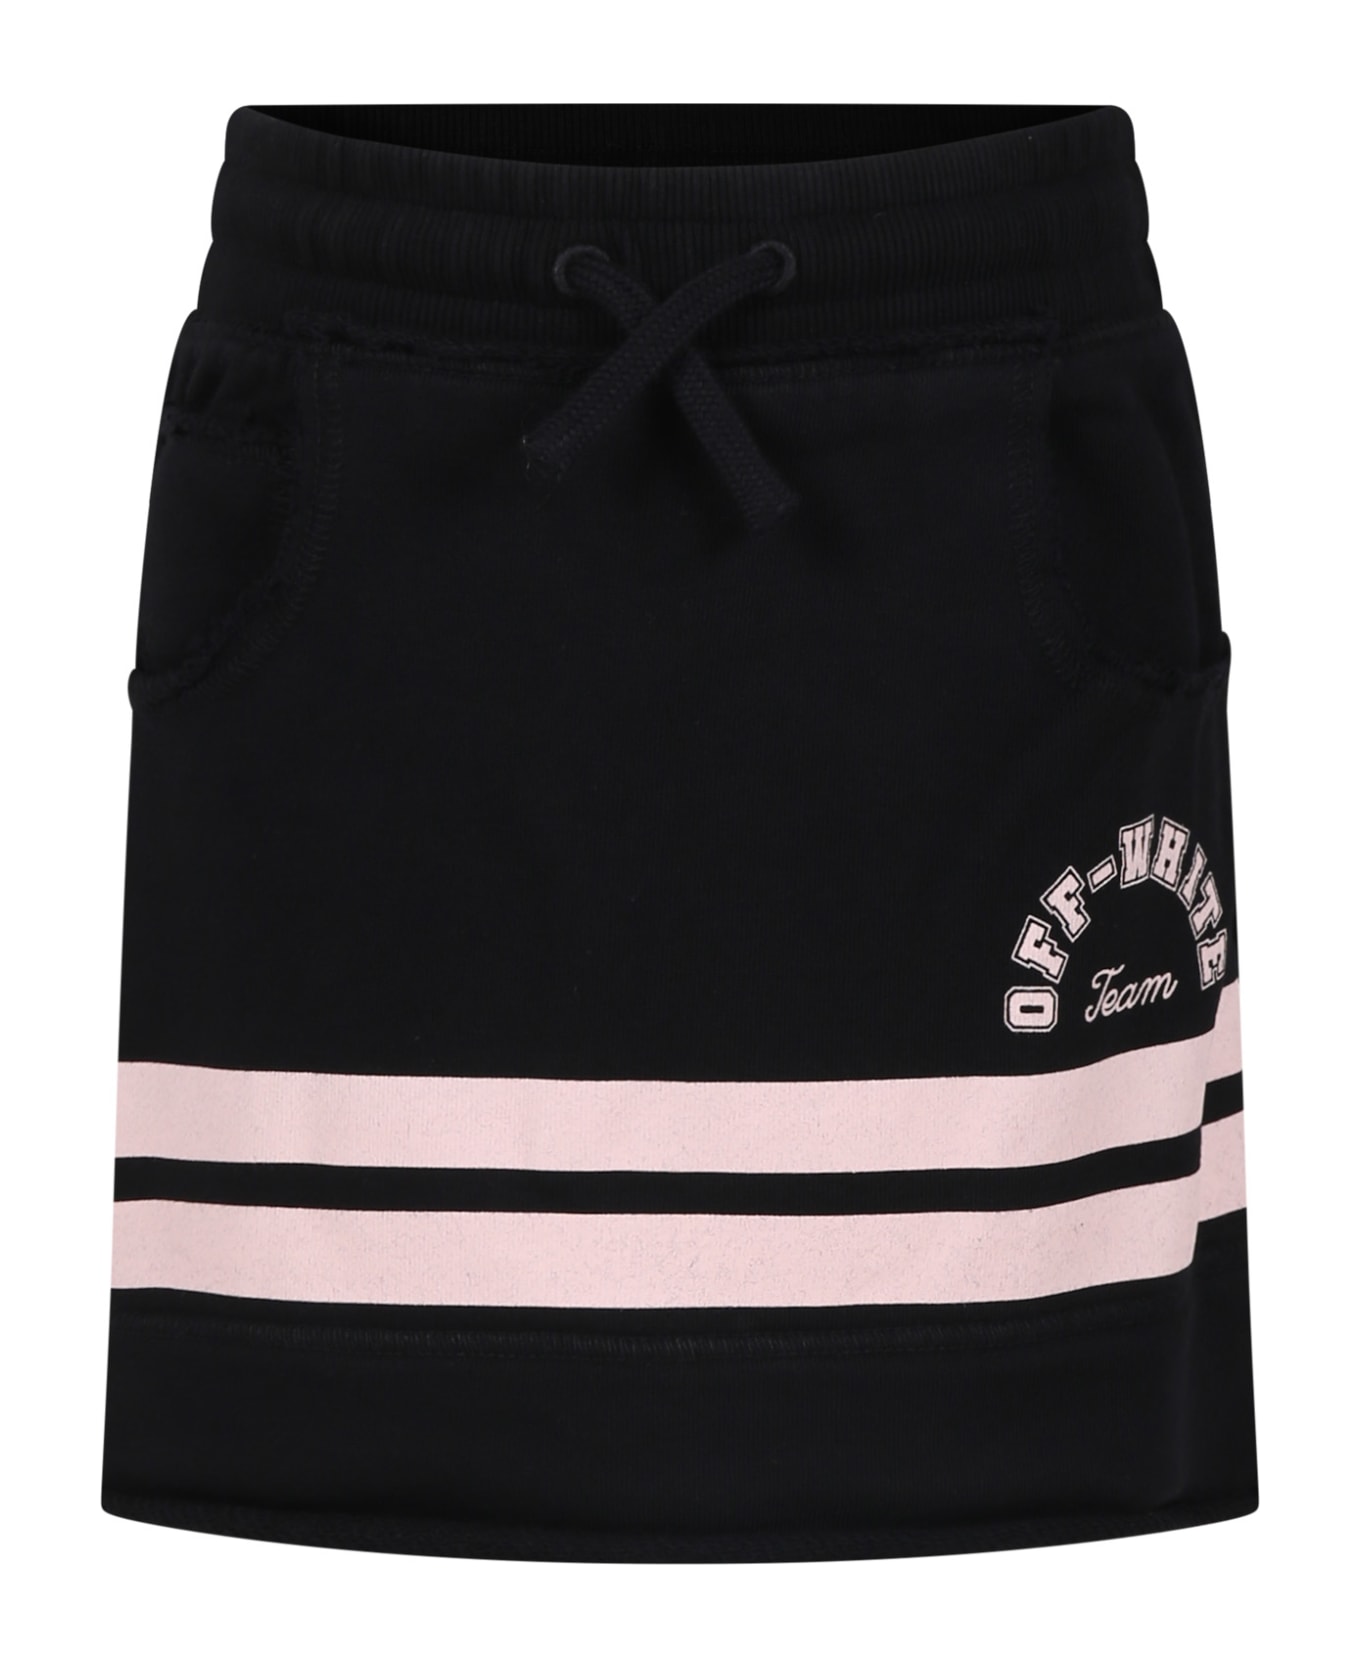 Off-White Black Skirt For Girl With Logo - Black